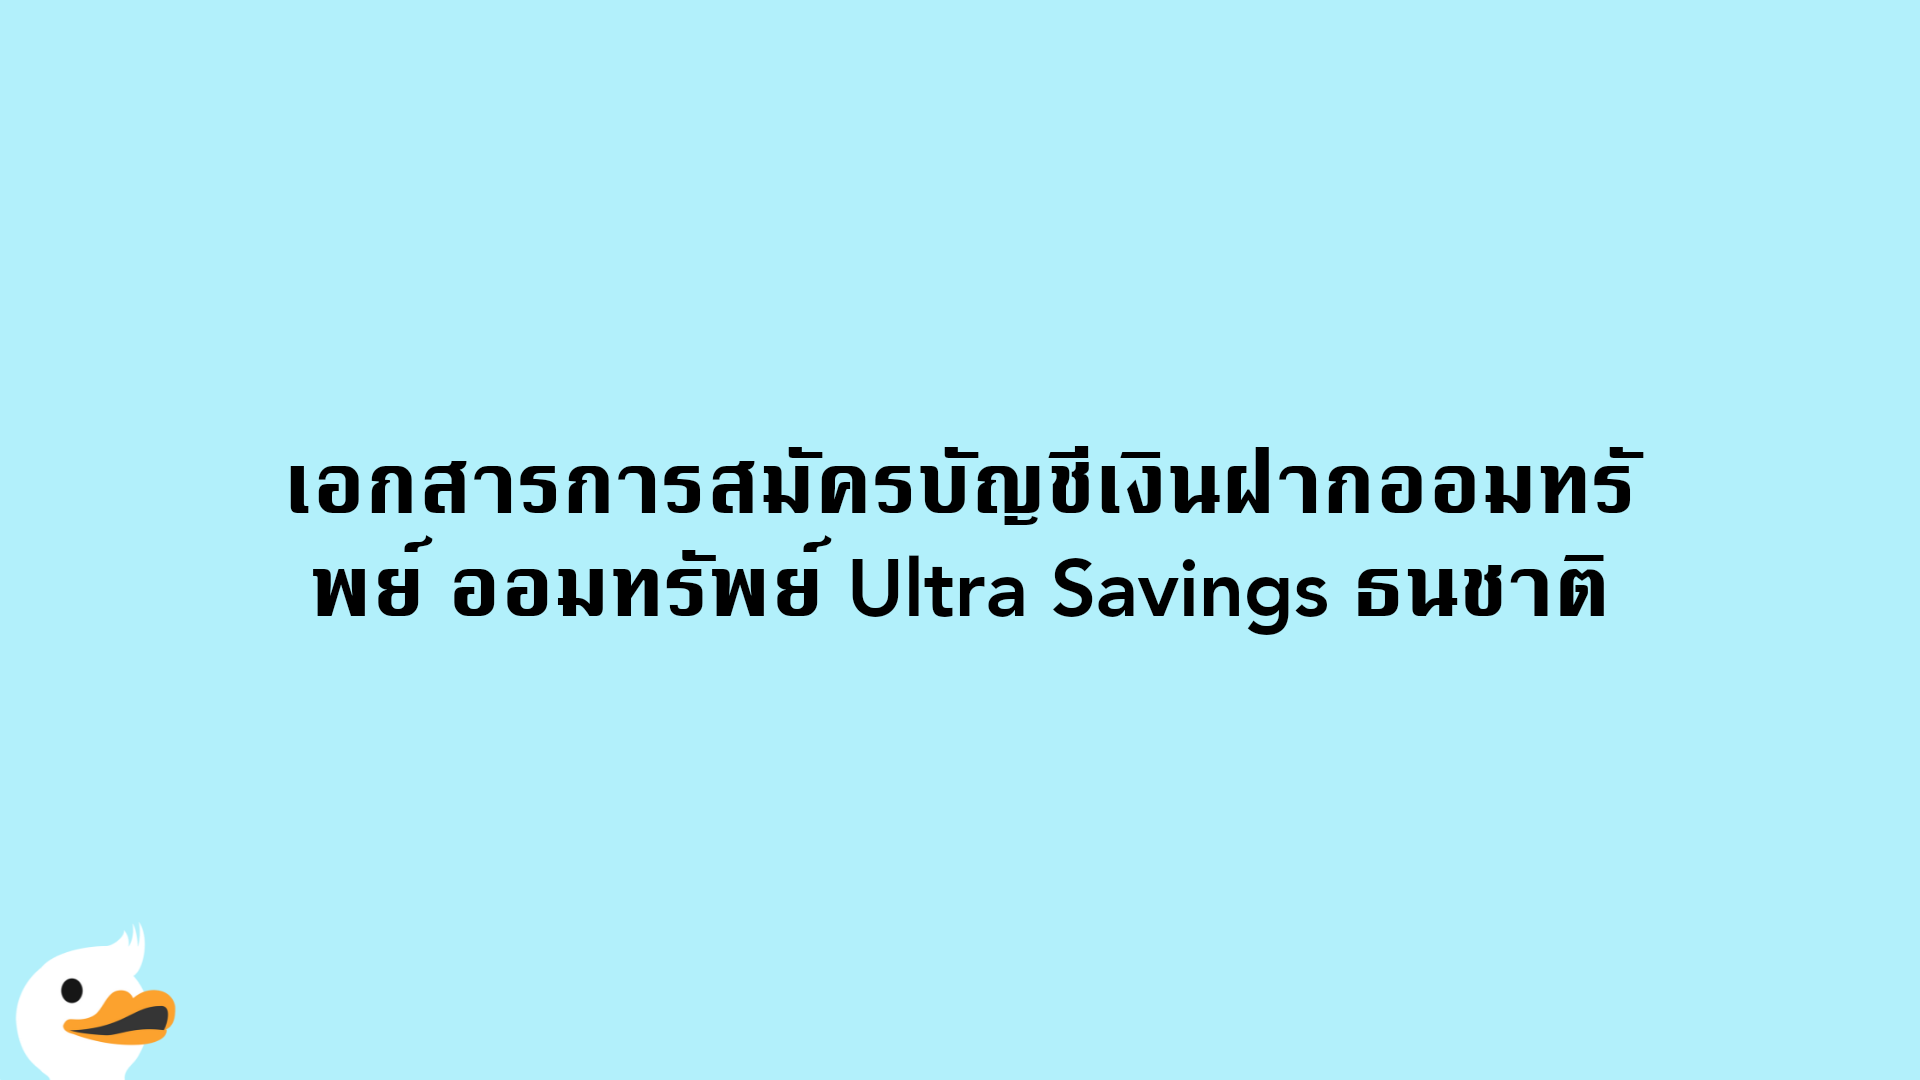 เอกสารการสมัครบัญชีเงินฝากออมทรัพย์ ออมทรัพย์ Ultra Savings ธนชาติ